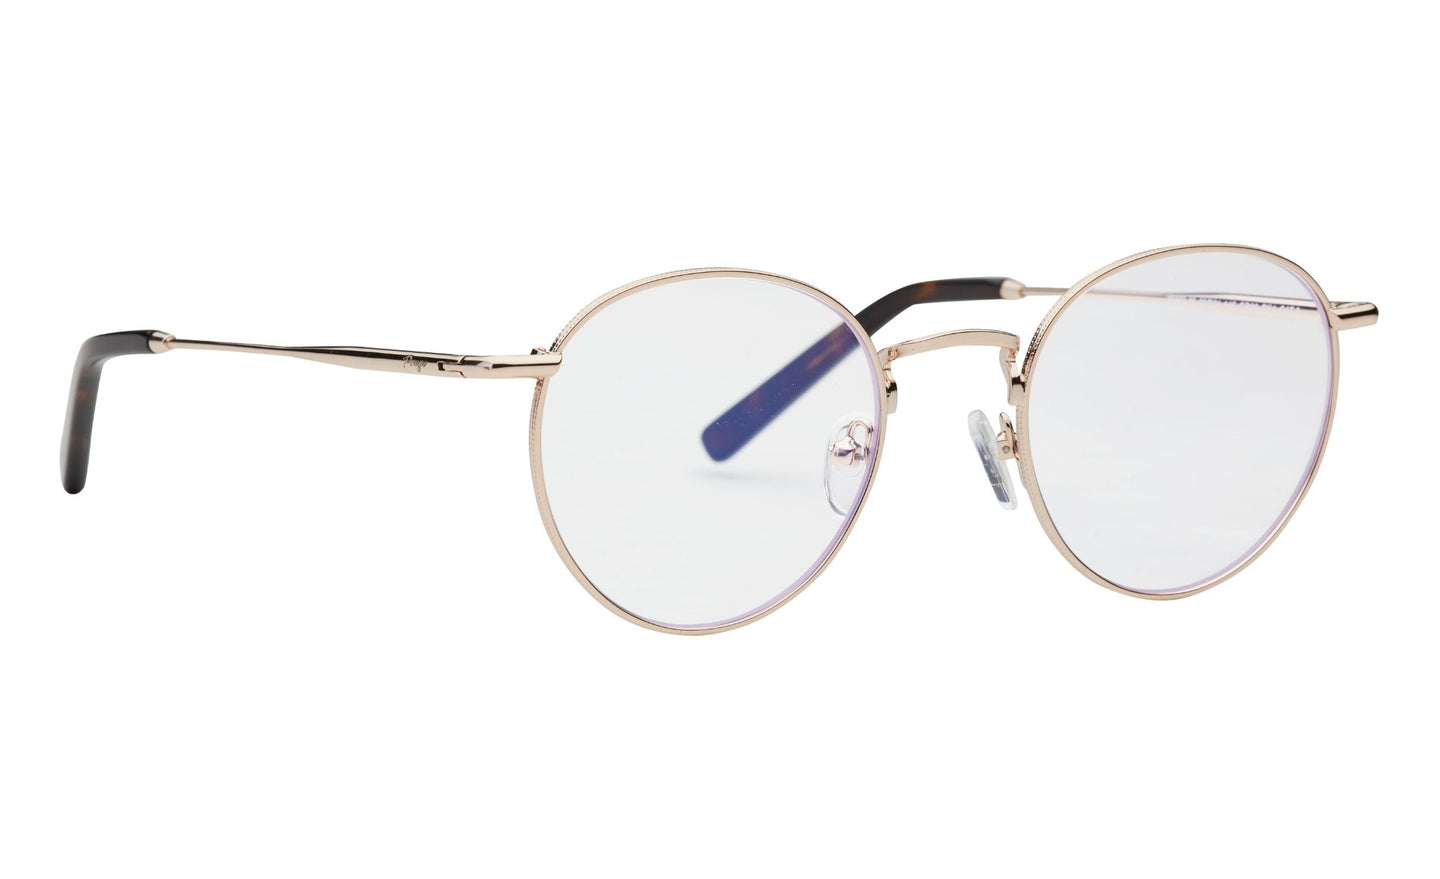 PREGO - Porlezza - Runde Bluelight briller